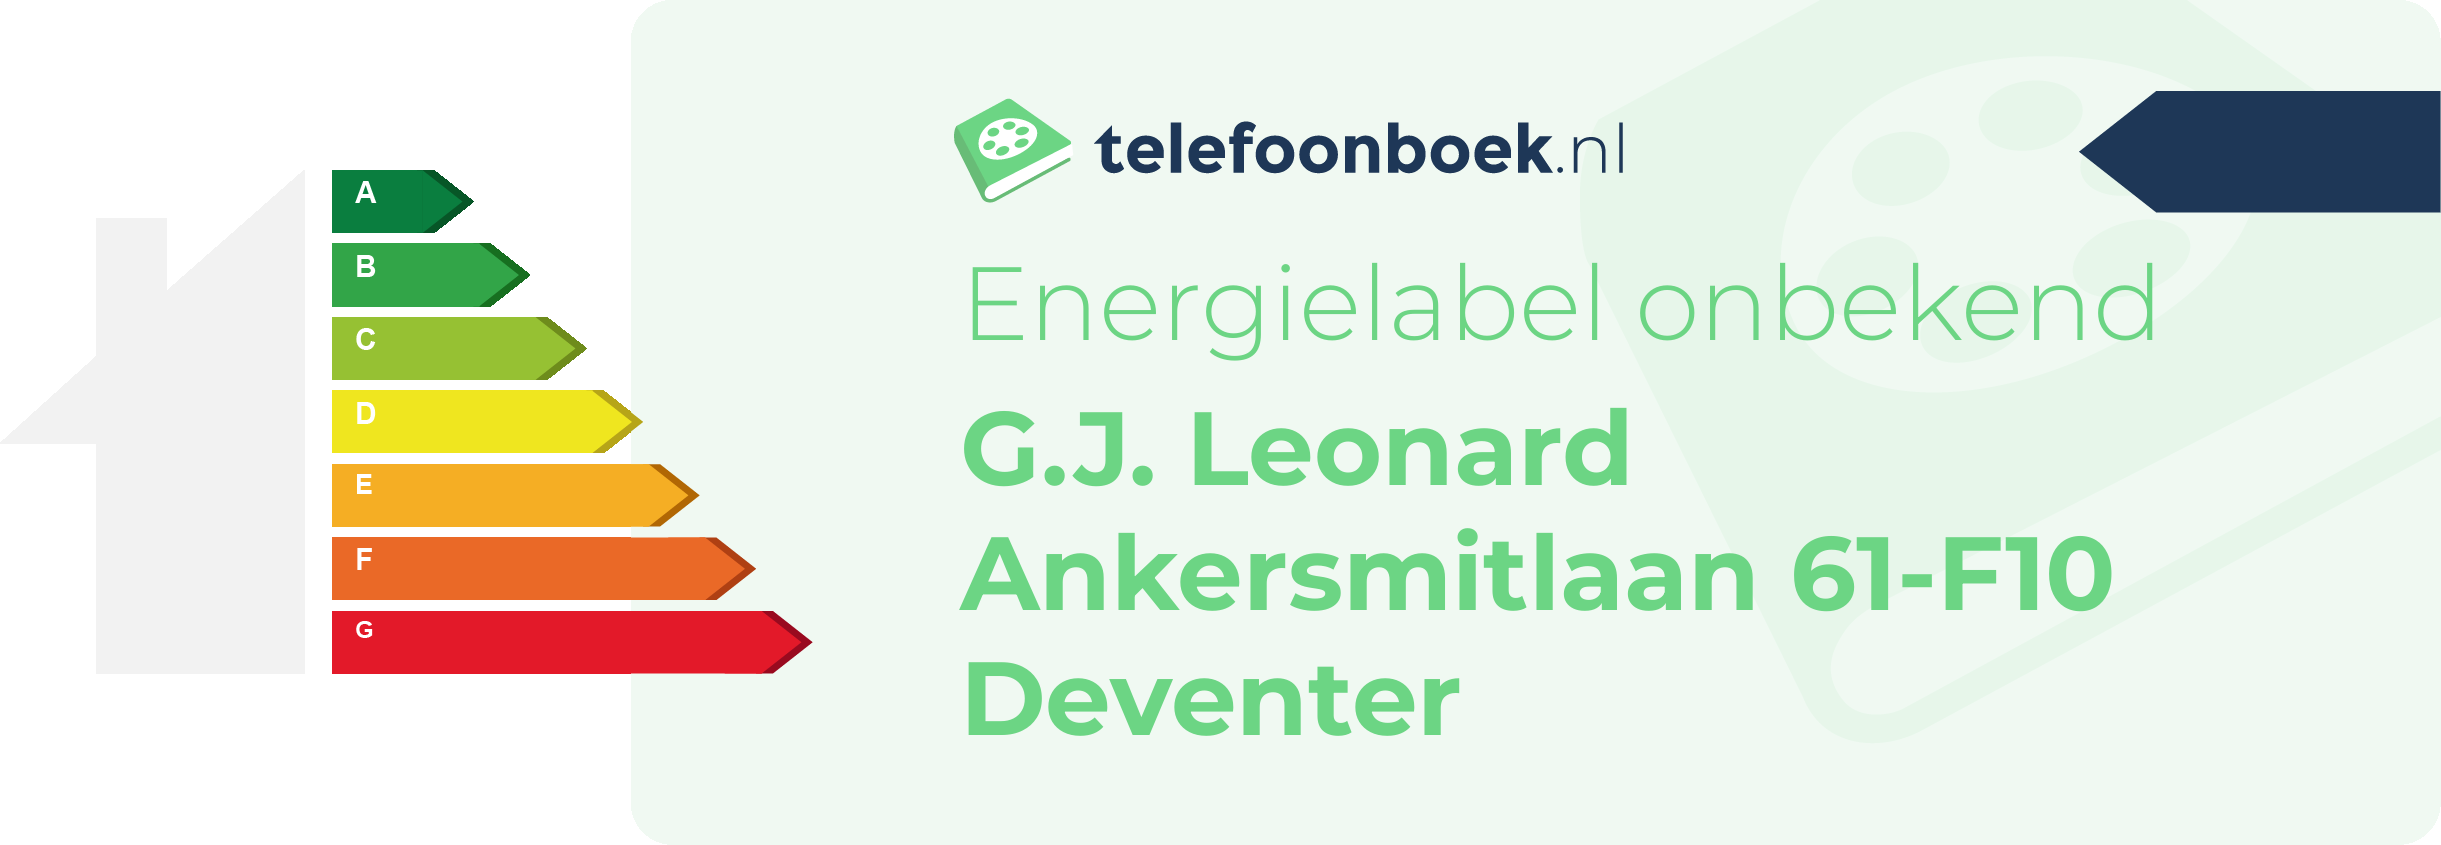 Energielabel G.J. Leonard Ankersmitlaan 61-F10 Deventer